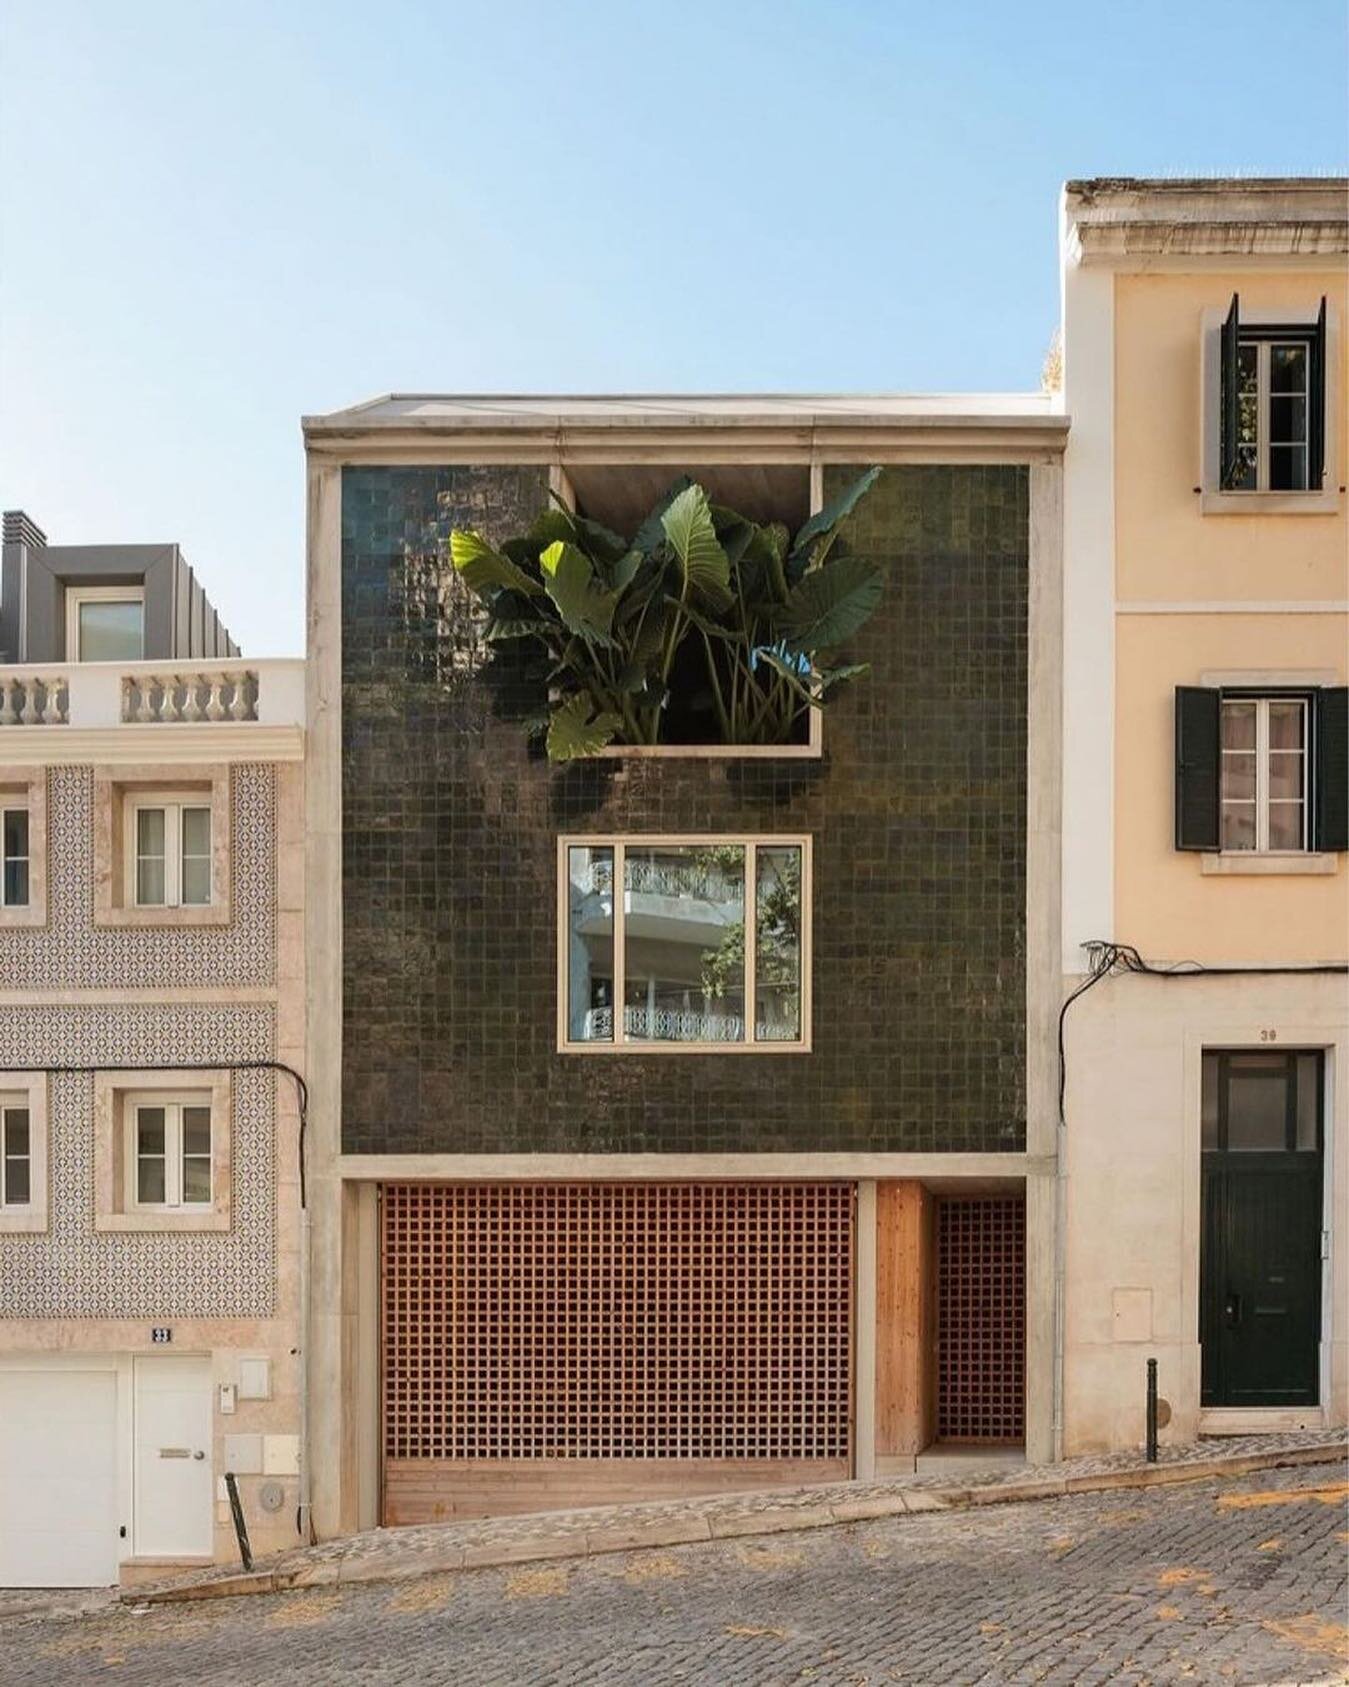 Une maison d&rsquo;architecte dans les rues de Lisbonne.

📷 @francisconogueira 
via @kellybehunstudio 

#lisboa #architecture #plants #tiles #azulejos #ruas&atilde;ofranciscodeborja #portugal🇵🇹 #streetphotography #travelphotography #iberico #lisbo